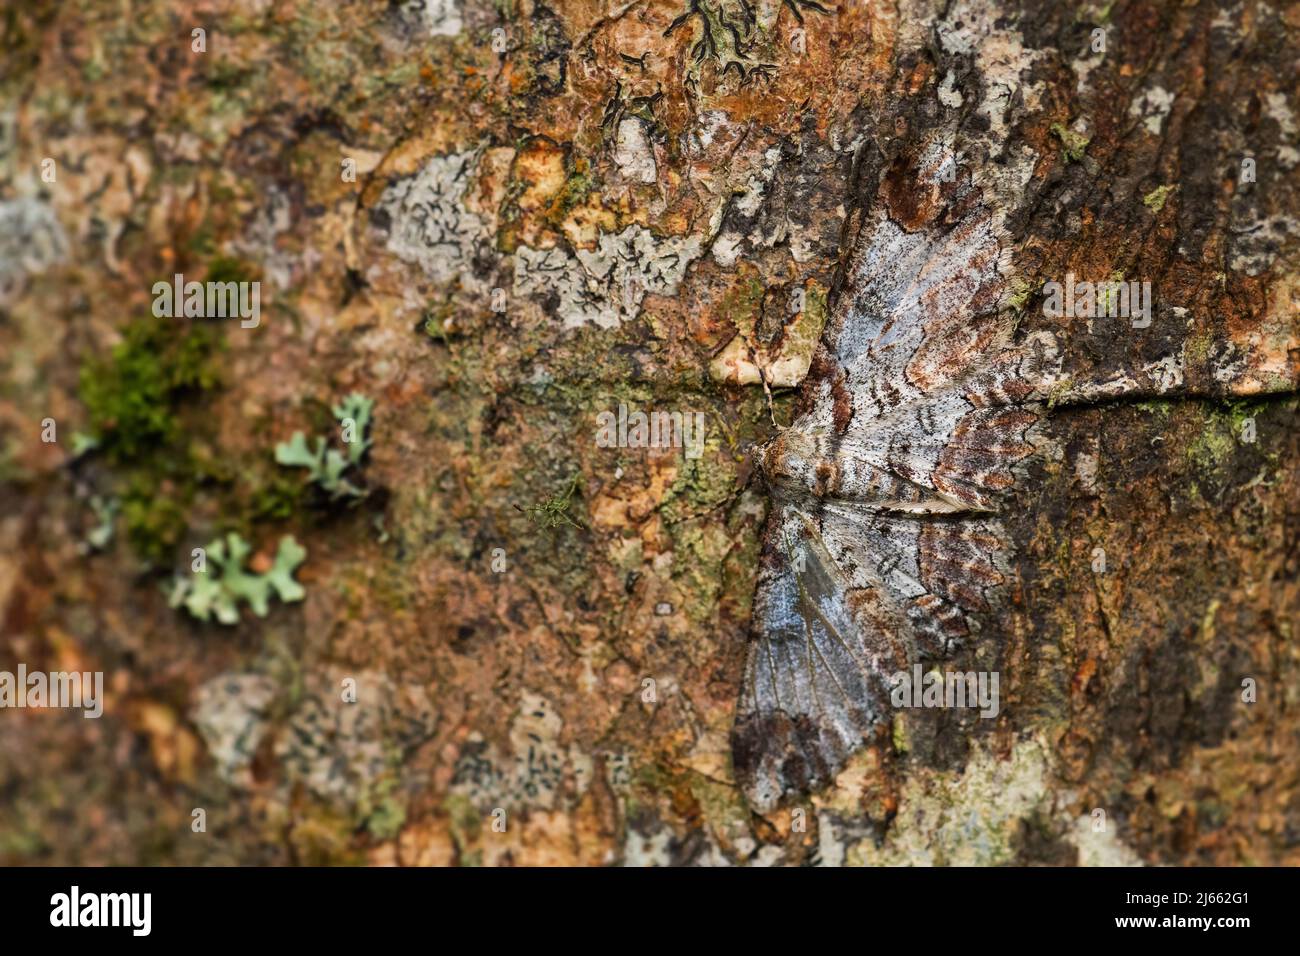 Polilla geometer - Iridopsis appetens, hermosa polilla enmascarada de los bosques de América del Sur, laderas andinas del este, Lodge Wild Sumaco, Ecuador. Foto de stock